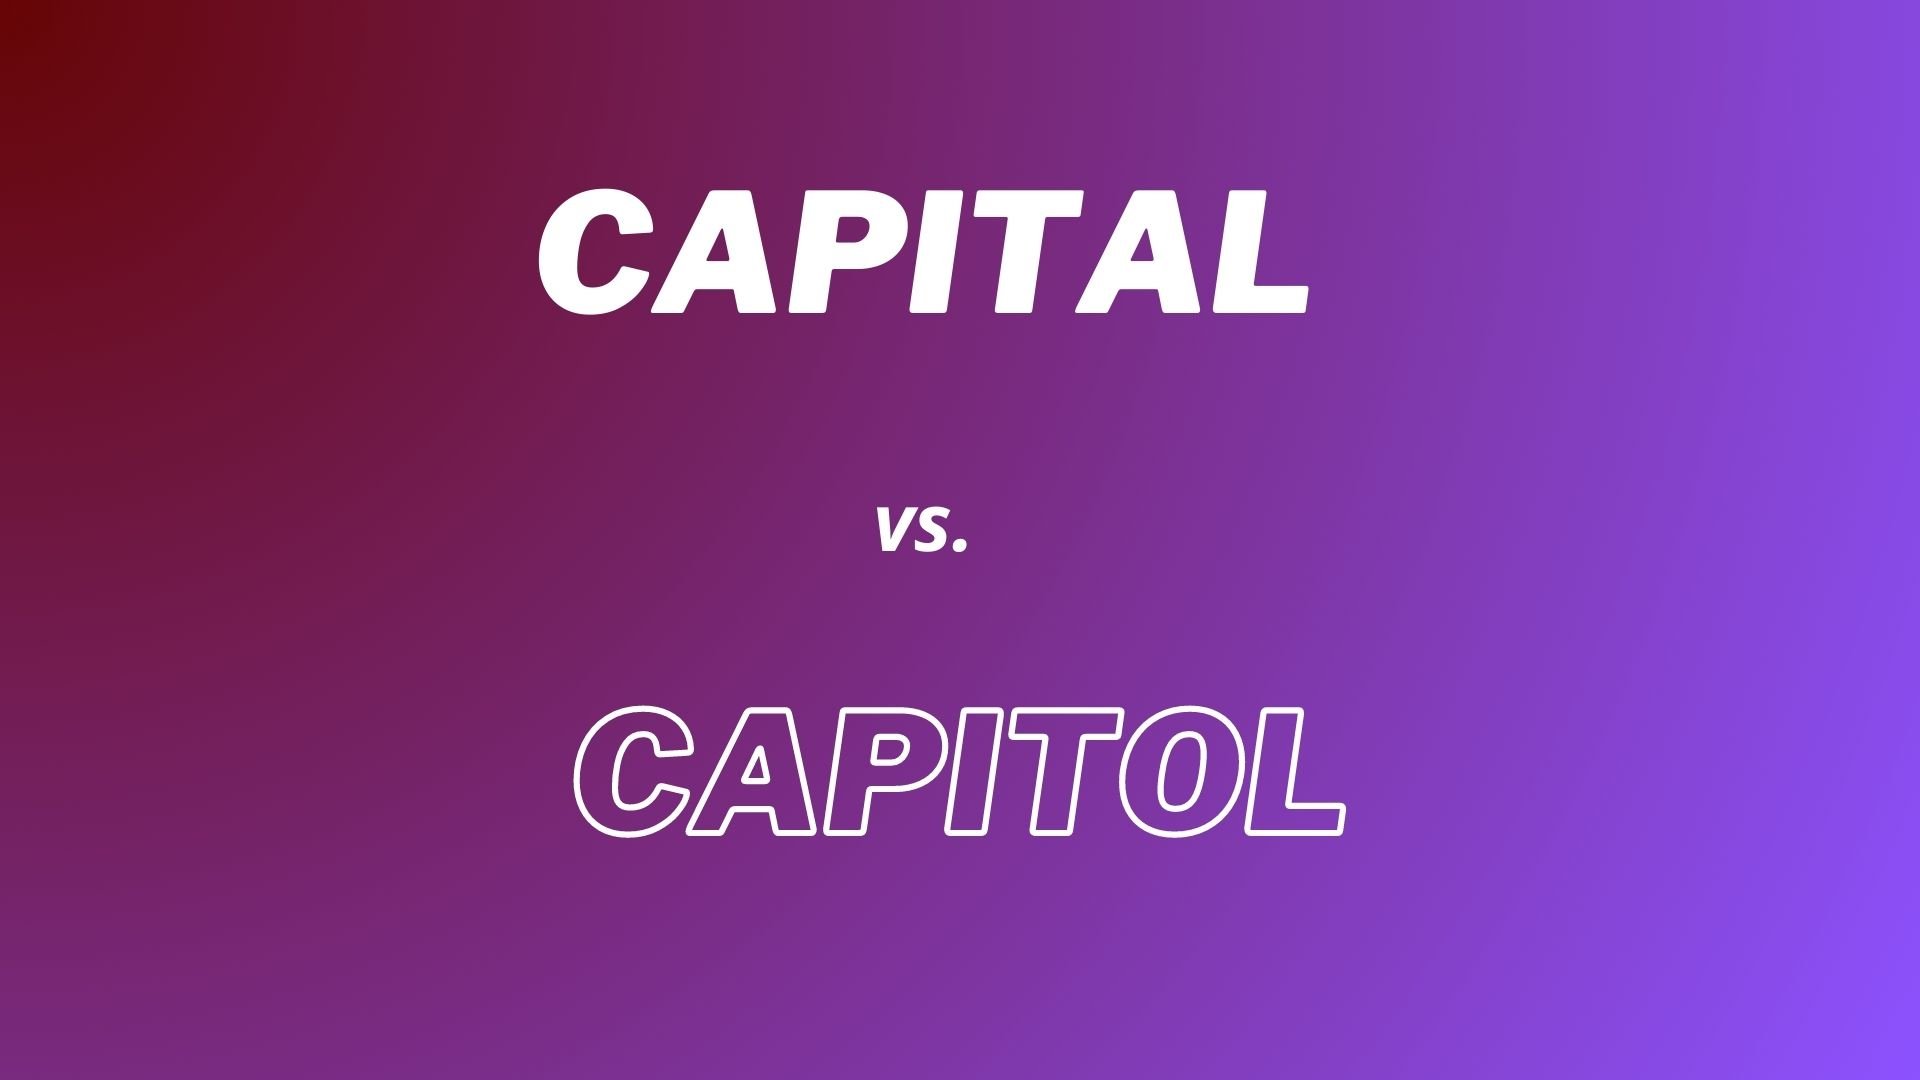 Definições completas das palavras em inglês "Capital" e "Capitol" com explicações das diferenças: